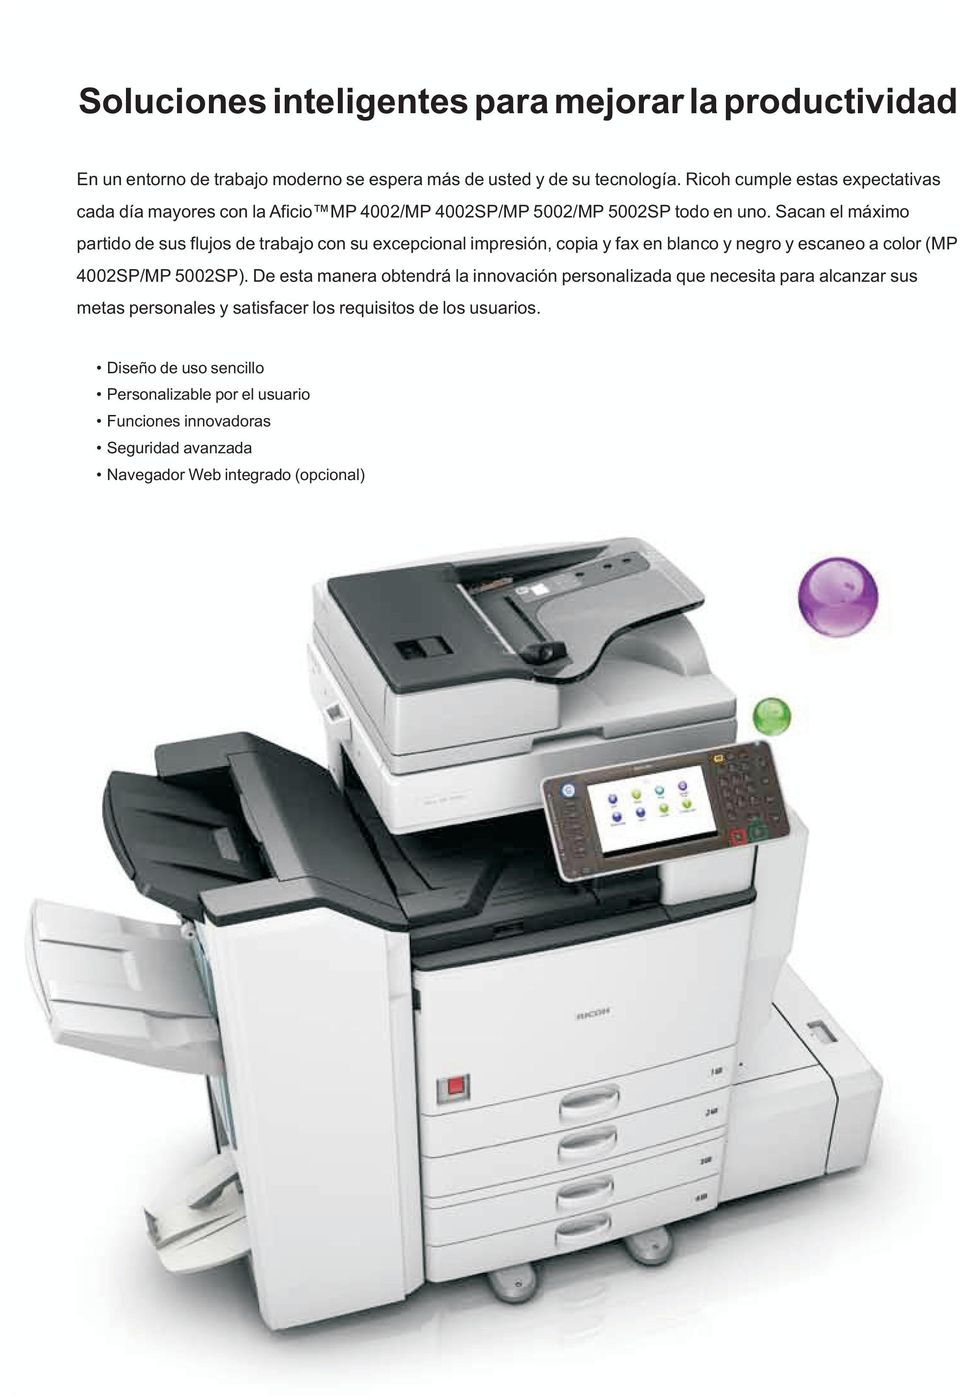 Sacan el máximo partido de sus flujos de trabajo con su excepcional impresión, copia y fax en blanco y negro y escaneo a color (MP 4002SP/MP 5002SP).